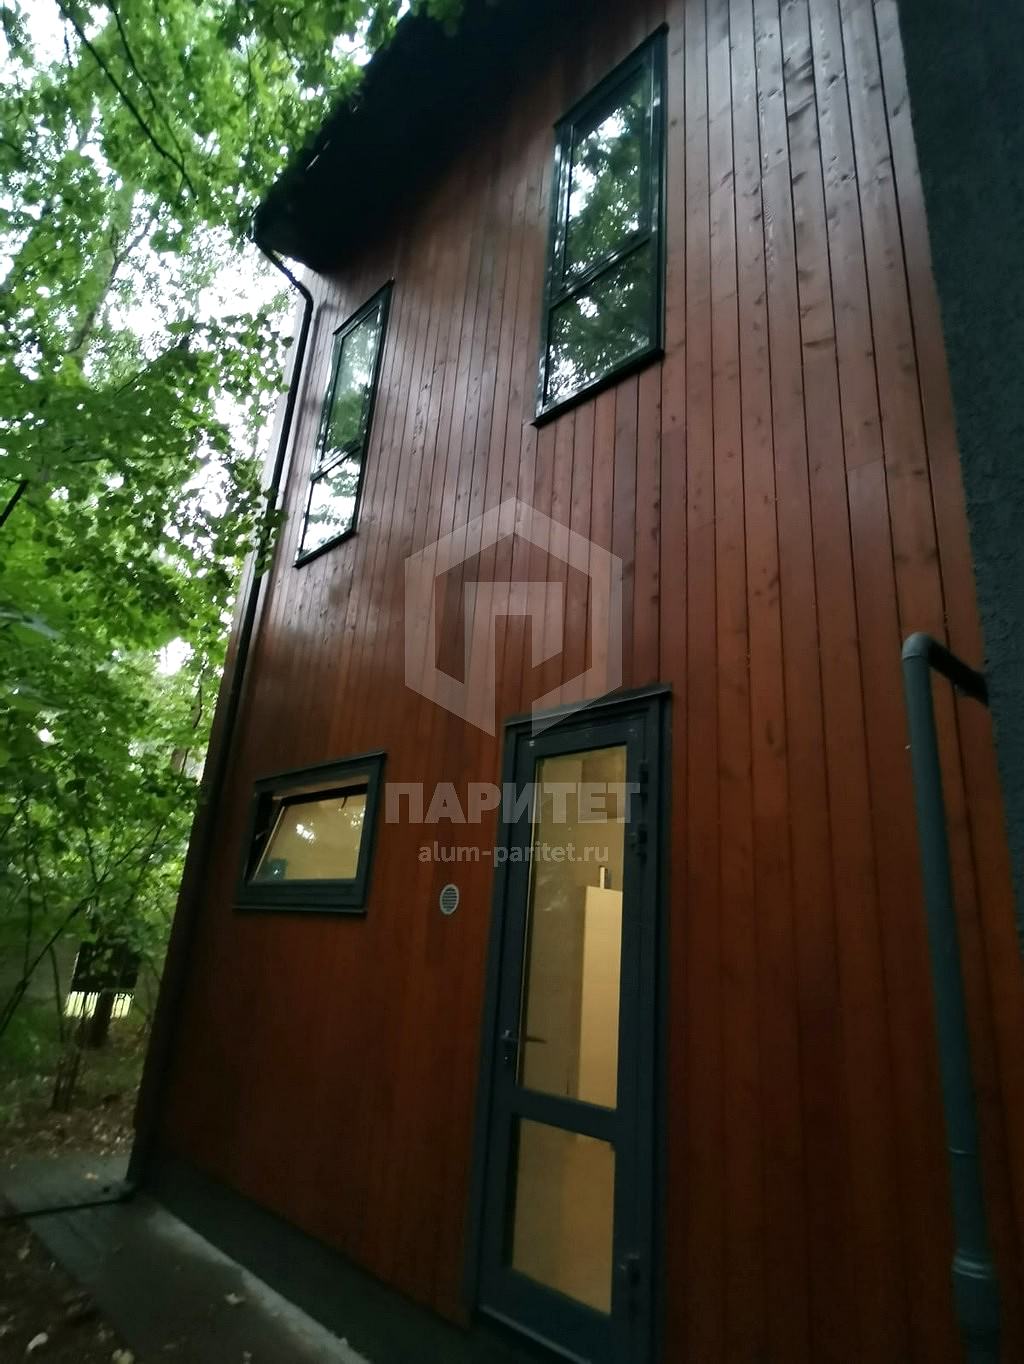 Купить алюминиевые окна и двери для частного дома в Москве недорого